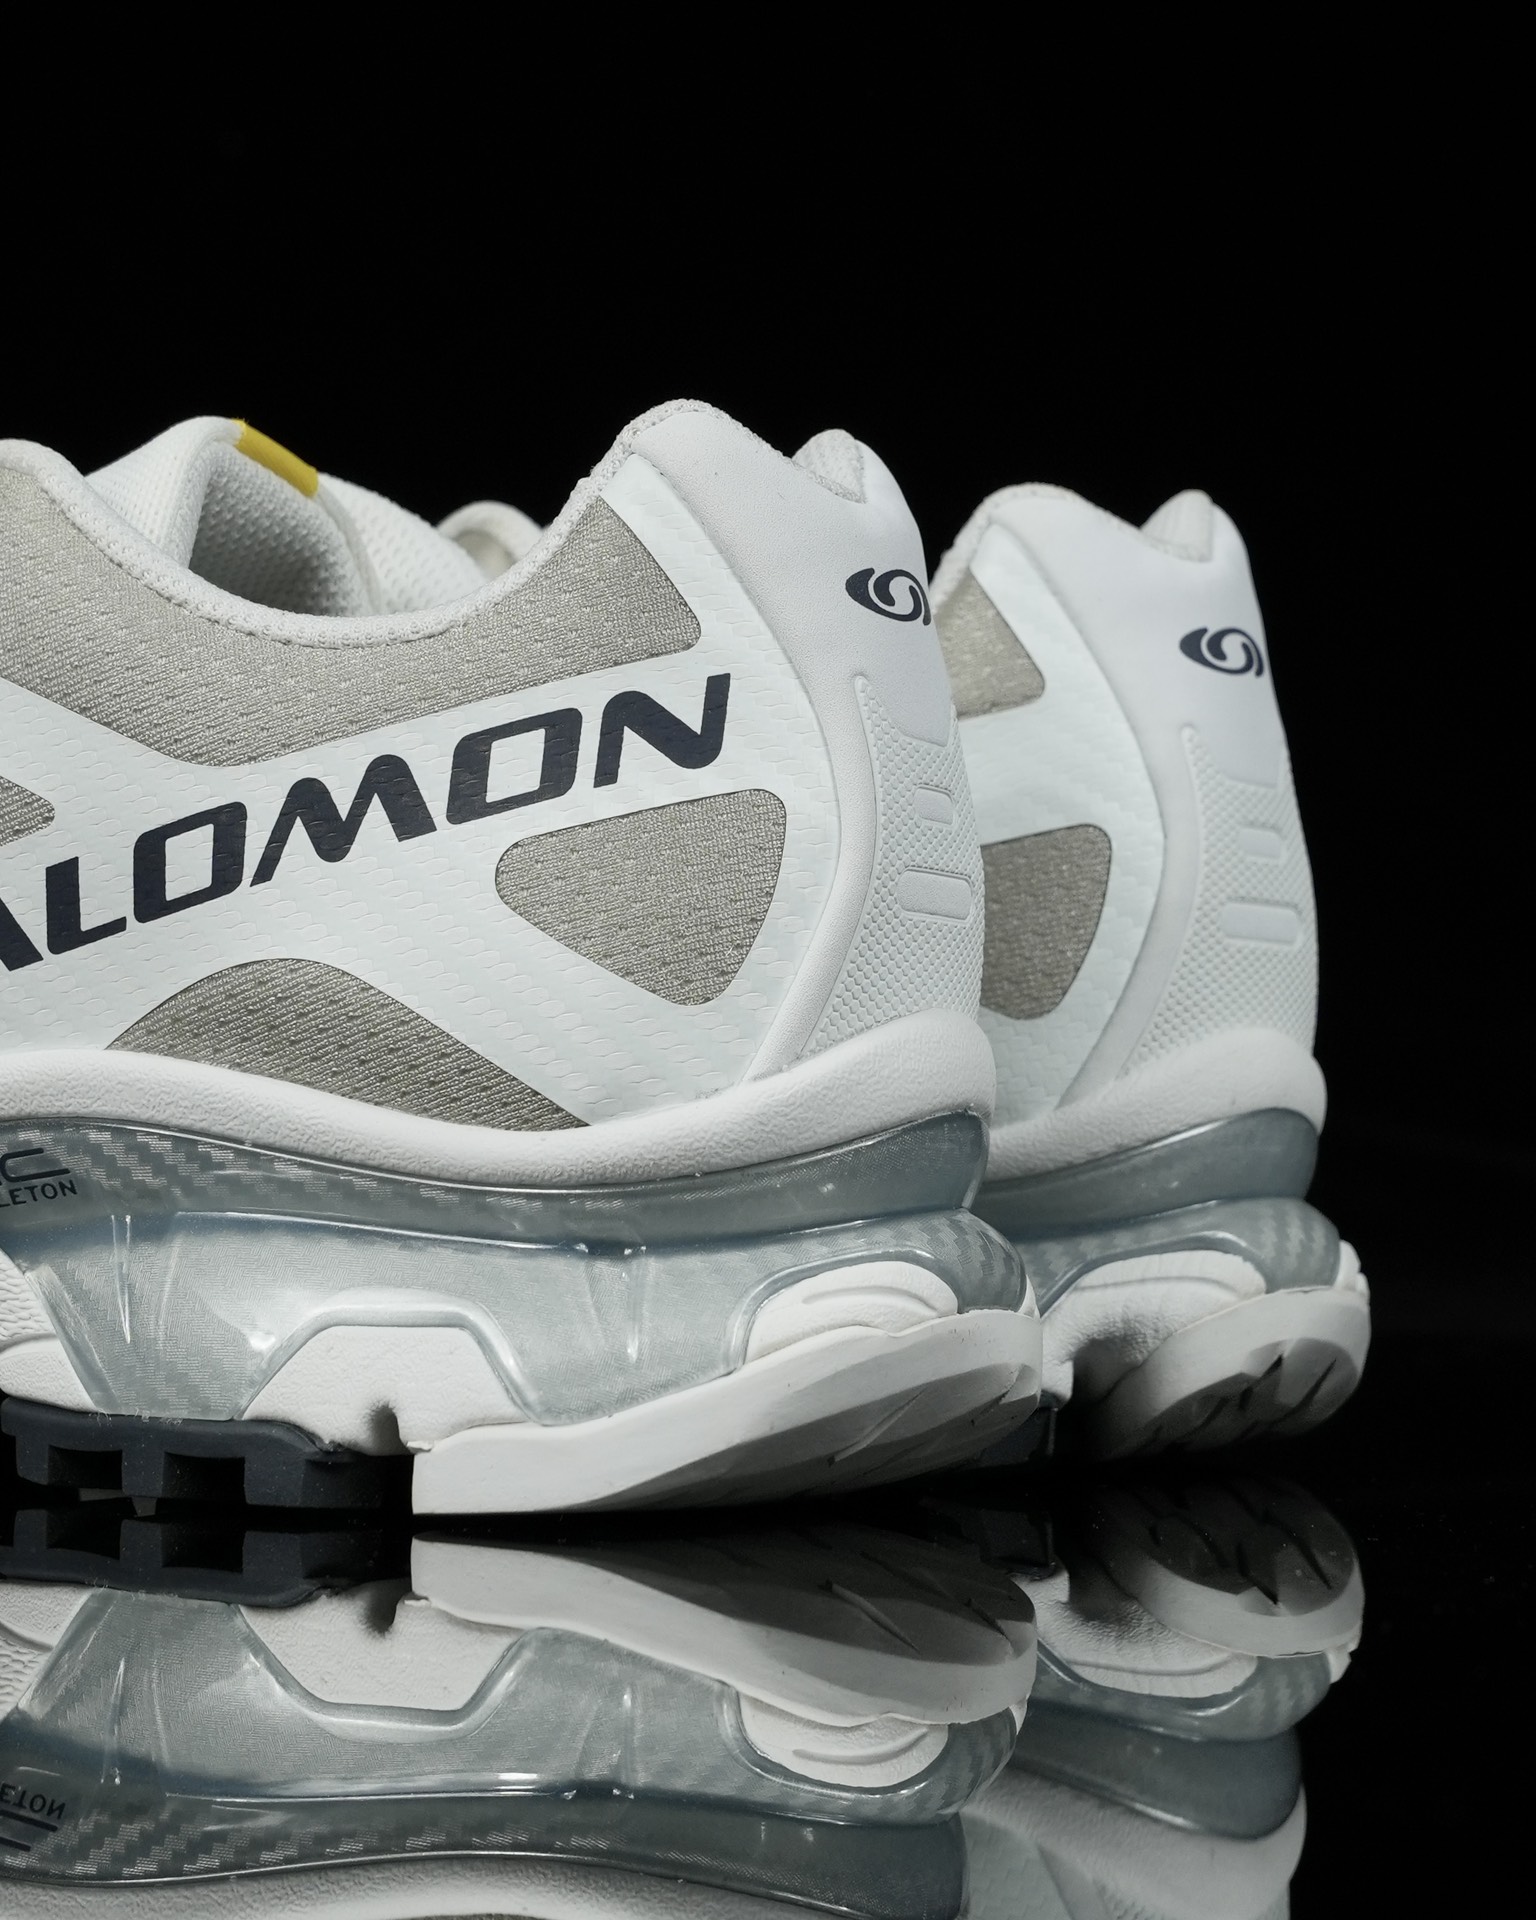 SalomonXT-4OG萨洛蒙高科技户外休闲跑鞋471330鞋身采用耐磨TPU和网眼材质打造让鞋子更轻